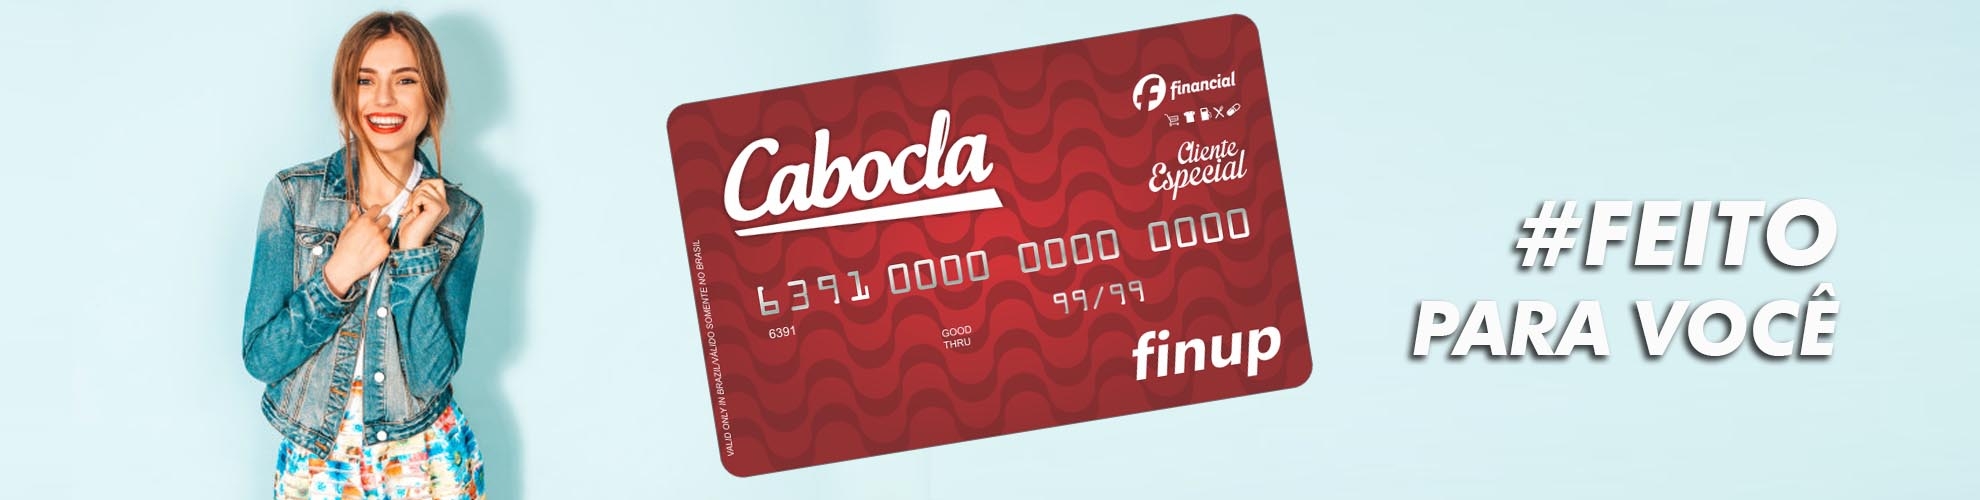 Cartão de Crédito Cabocla